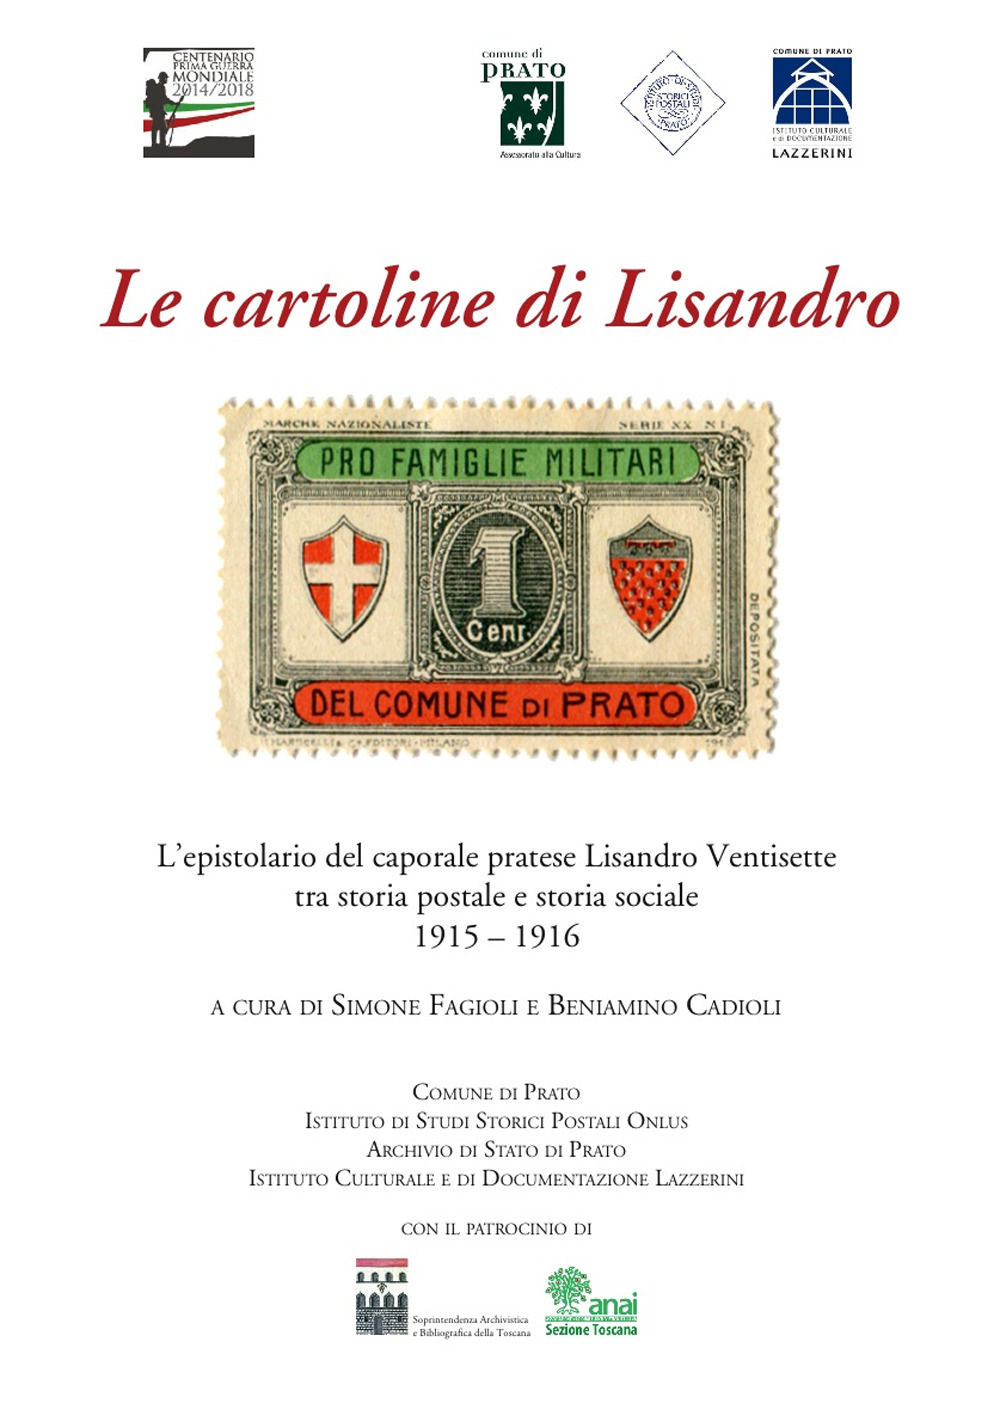 Image of Le cartoline di Lisandro. L'epistolario del caporale pratese Lisandro Ventisette tra storia postale e storia sociale 1915-16